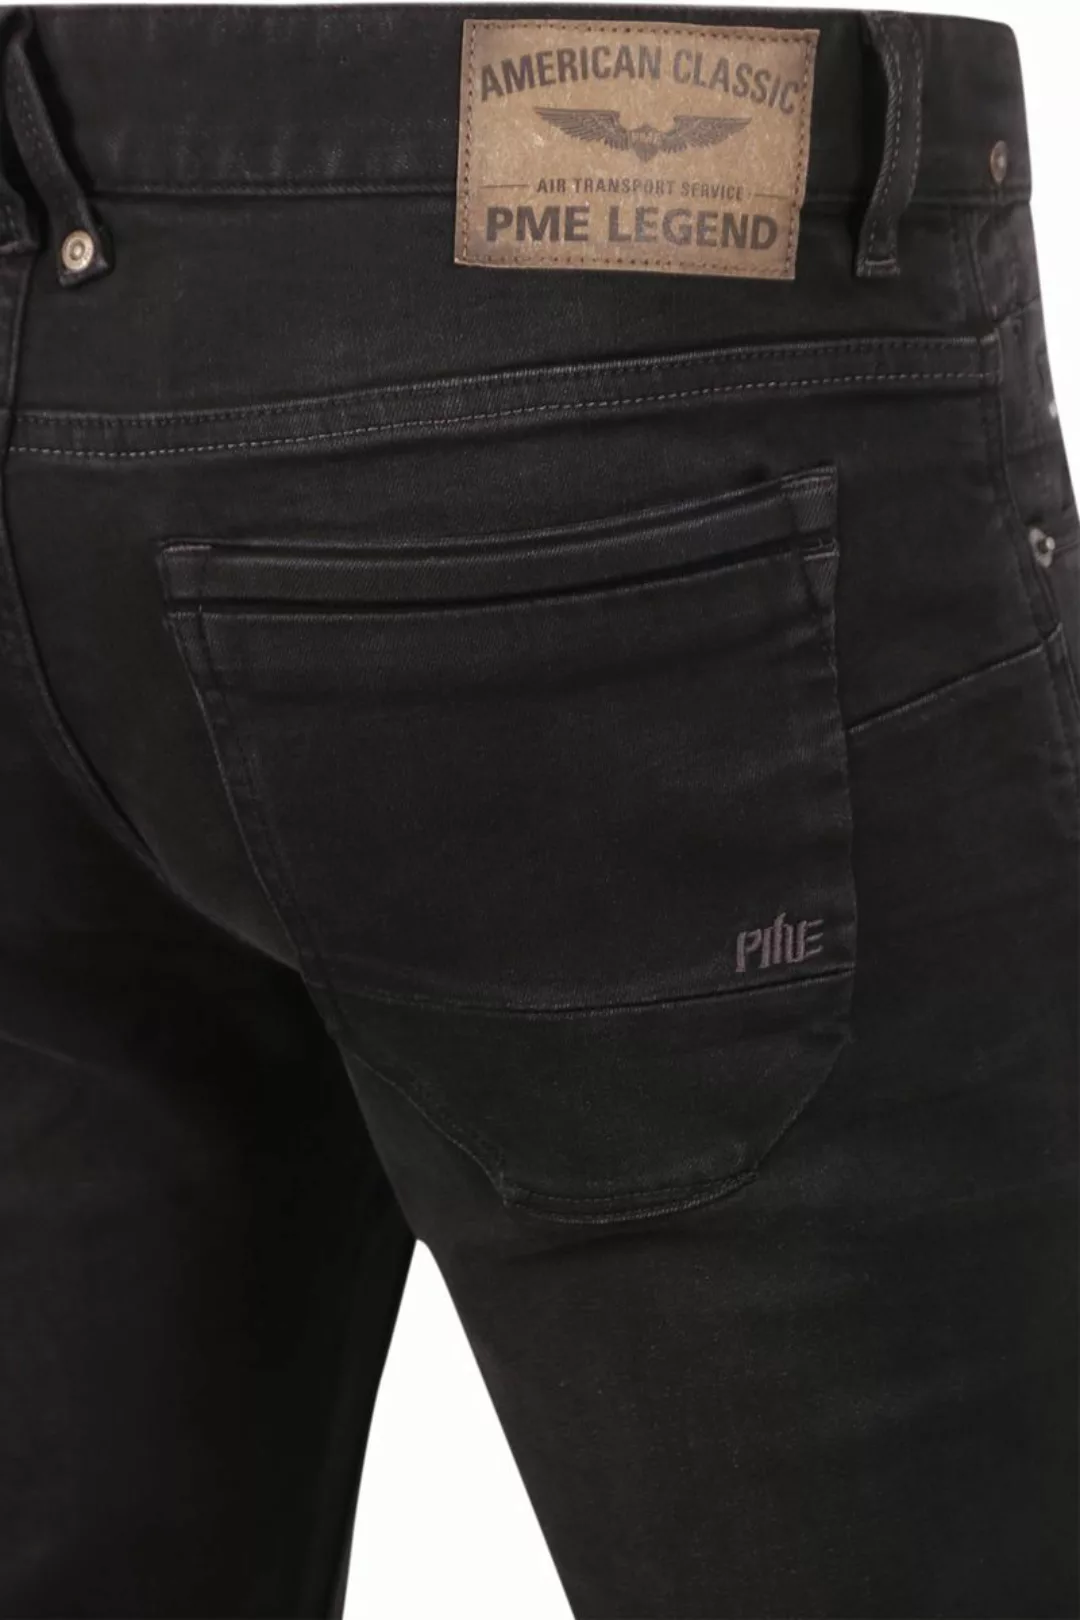 PME Legend Nightflight Jeans Schwarz RBD - Größe W 36 - L 32 günstig online kaufen